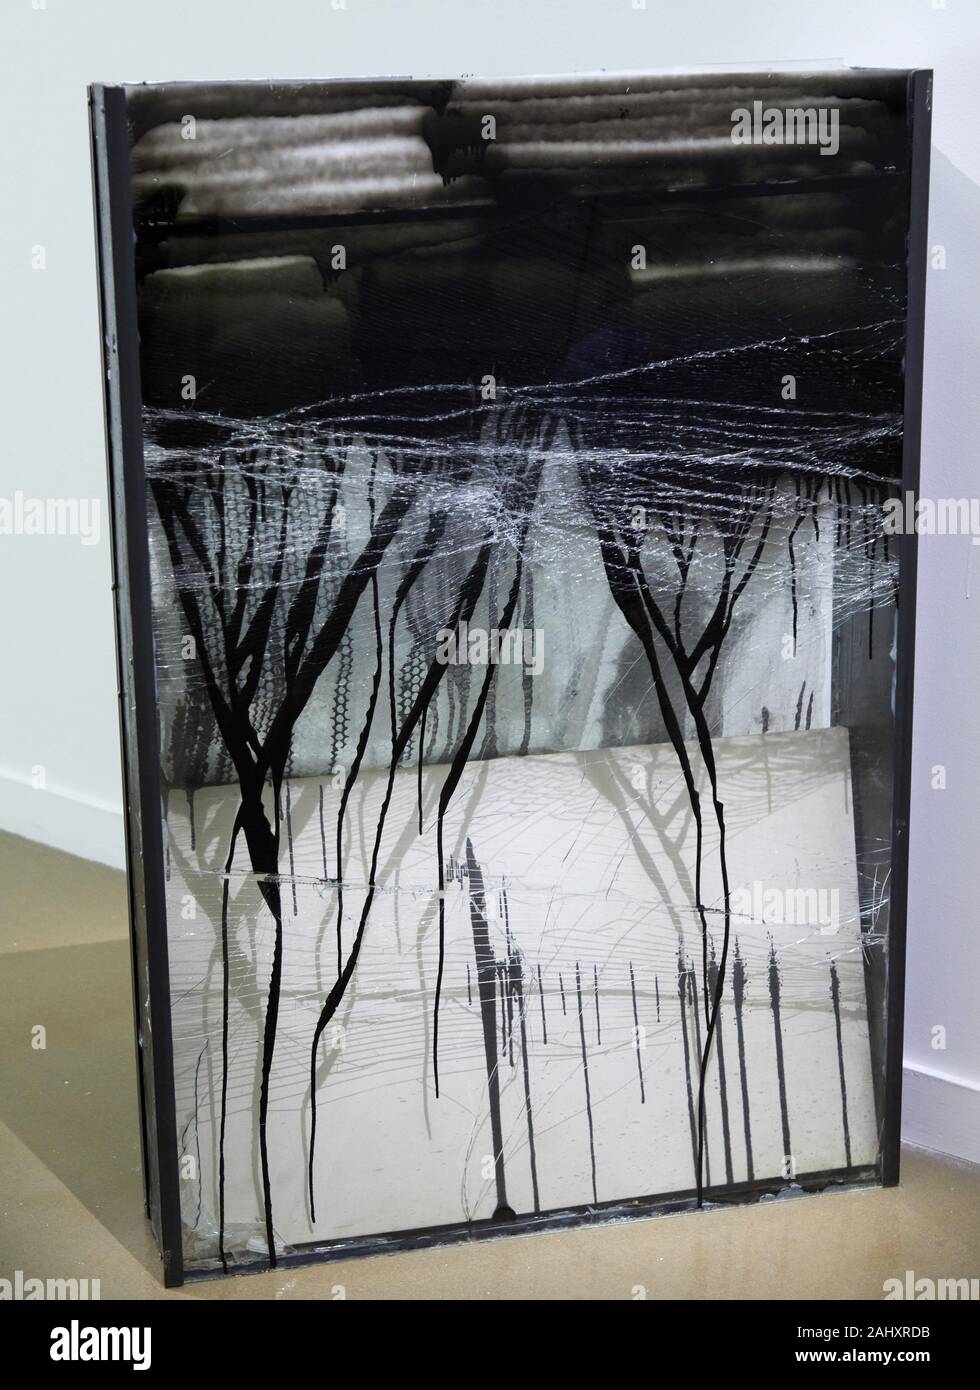 '''Pintado slab'', 2011, Oscar Tuazon, Rumeurs & Légendes, Mam, de la ciudad de París, el Museo de Arte Moderno, el Musée d'Art Moderne de la Ville de Paris, Francia Foto de stock